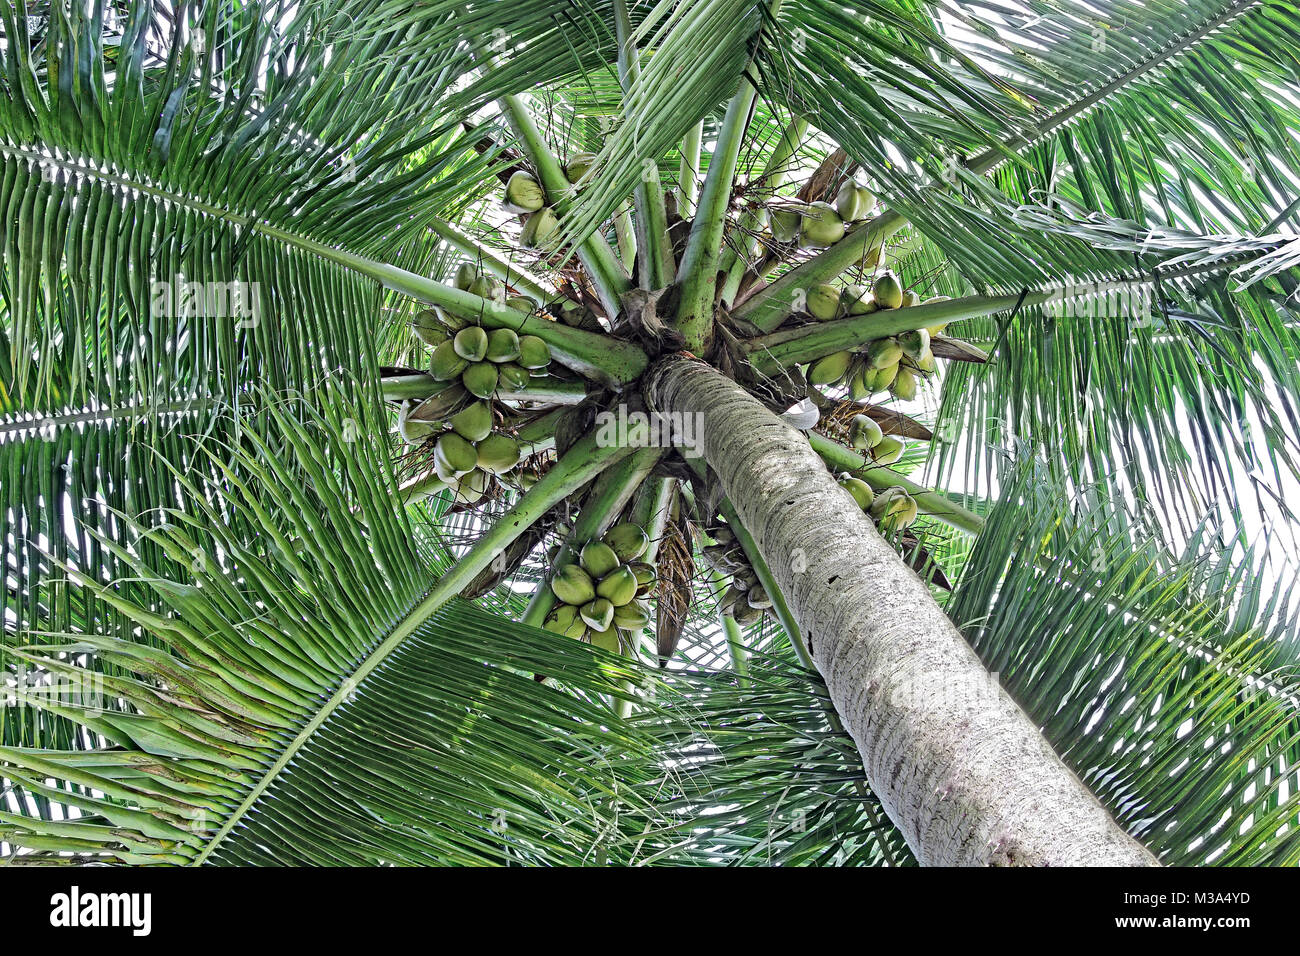 Kokospalme Vordach mit Reif und Ausschreibung Muttern, von üppigen grünen Blätter, vom Boden aus gesehen Umgeben Stockfoto